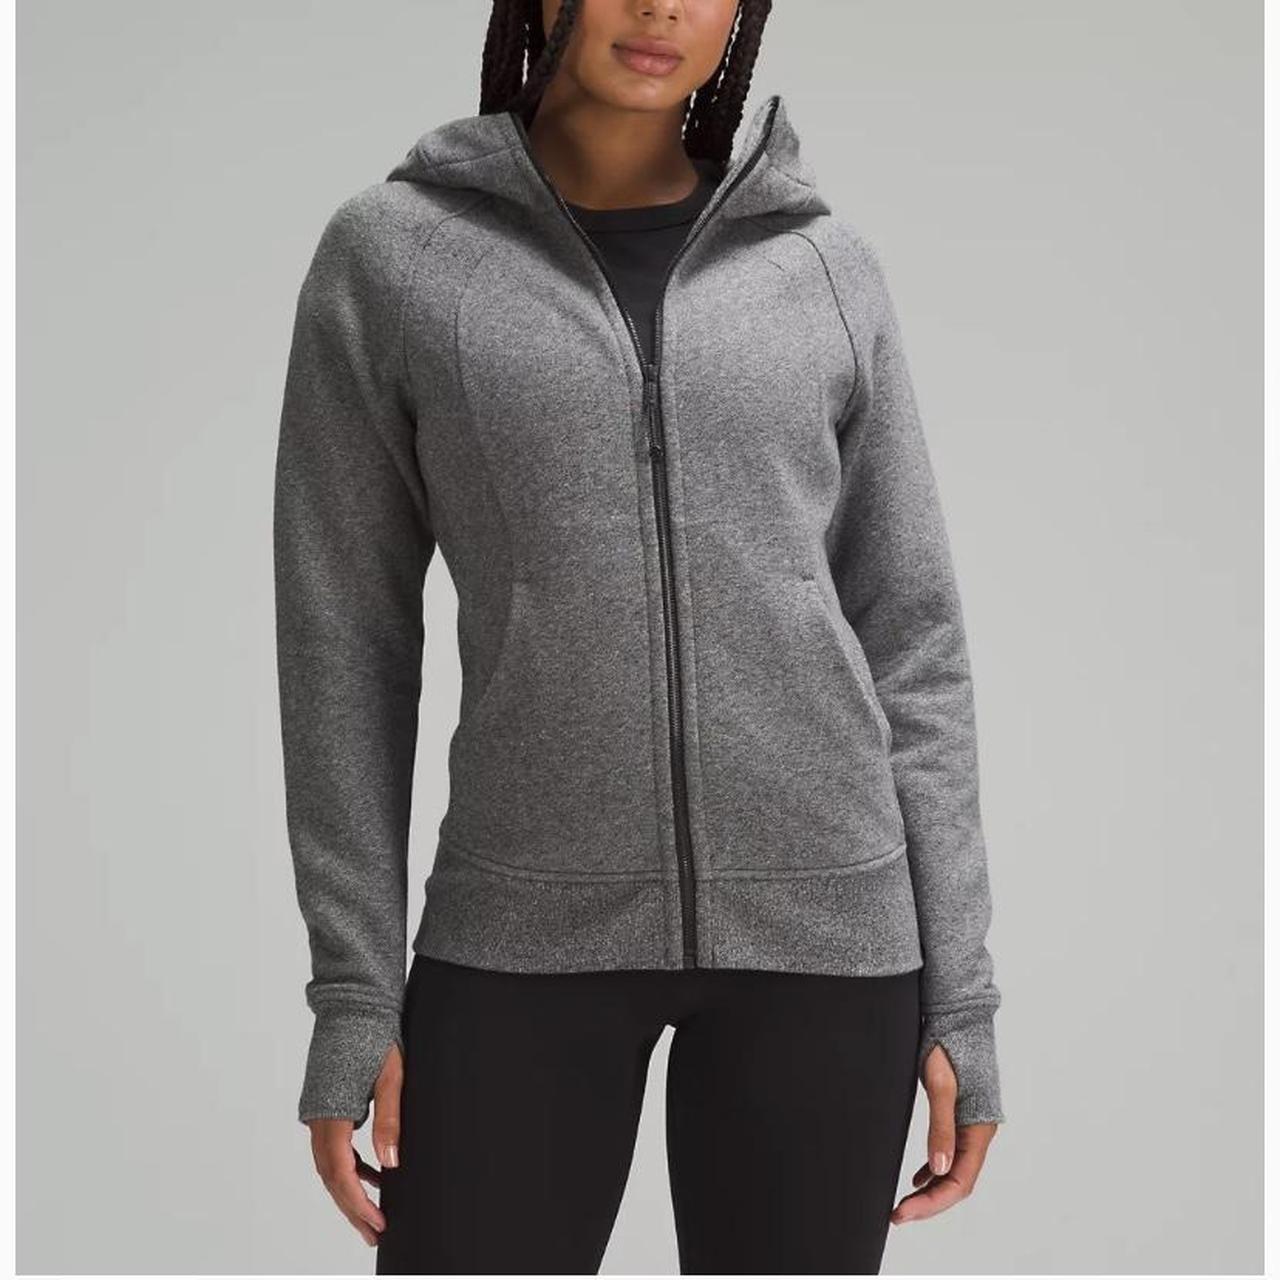 LuLu Scuba Grey Zip Hoodie Lu 281 Womens Fleece Yoga Jacket